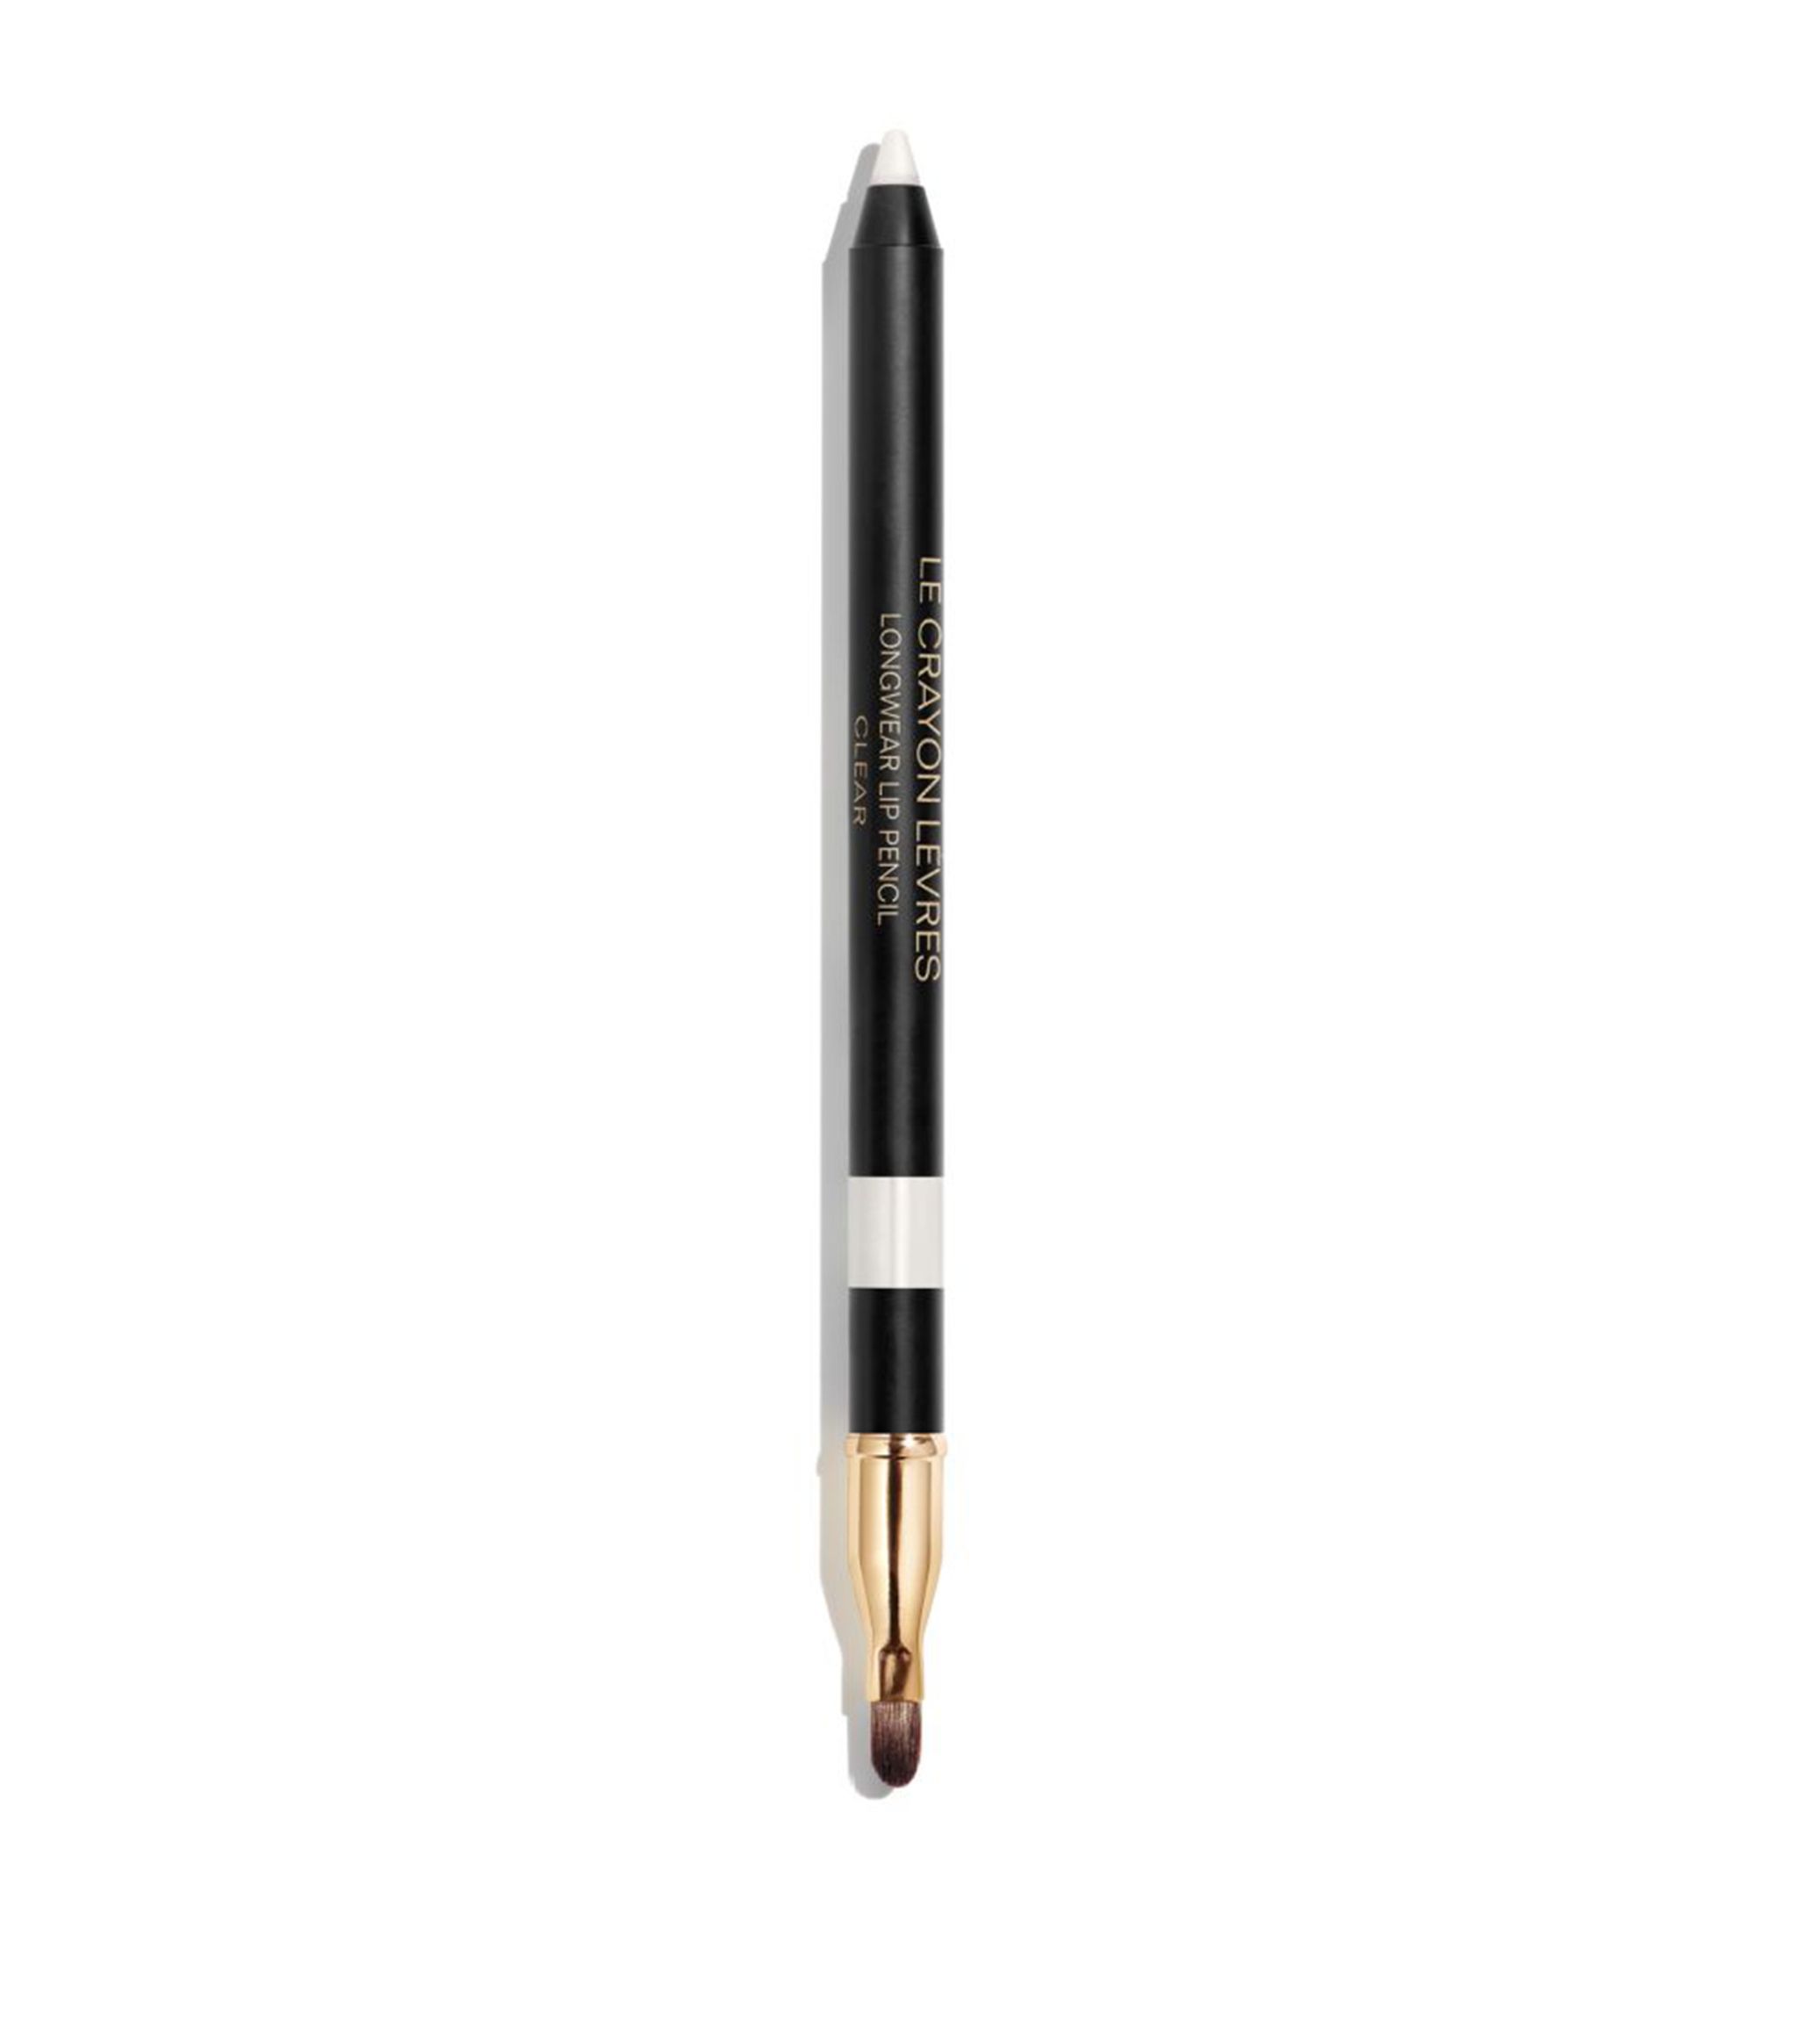 Chanel Dlouhotrvající tužka na rty (Longwear Lip Pencil) 1,2 g 182 Rose/Framboise